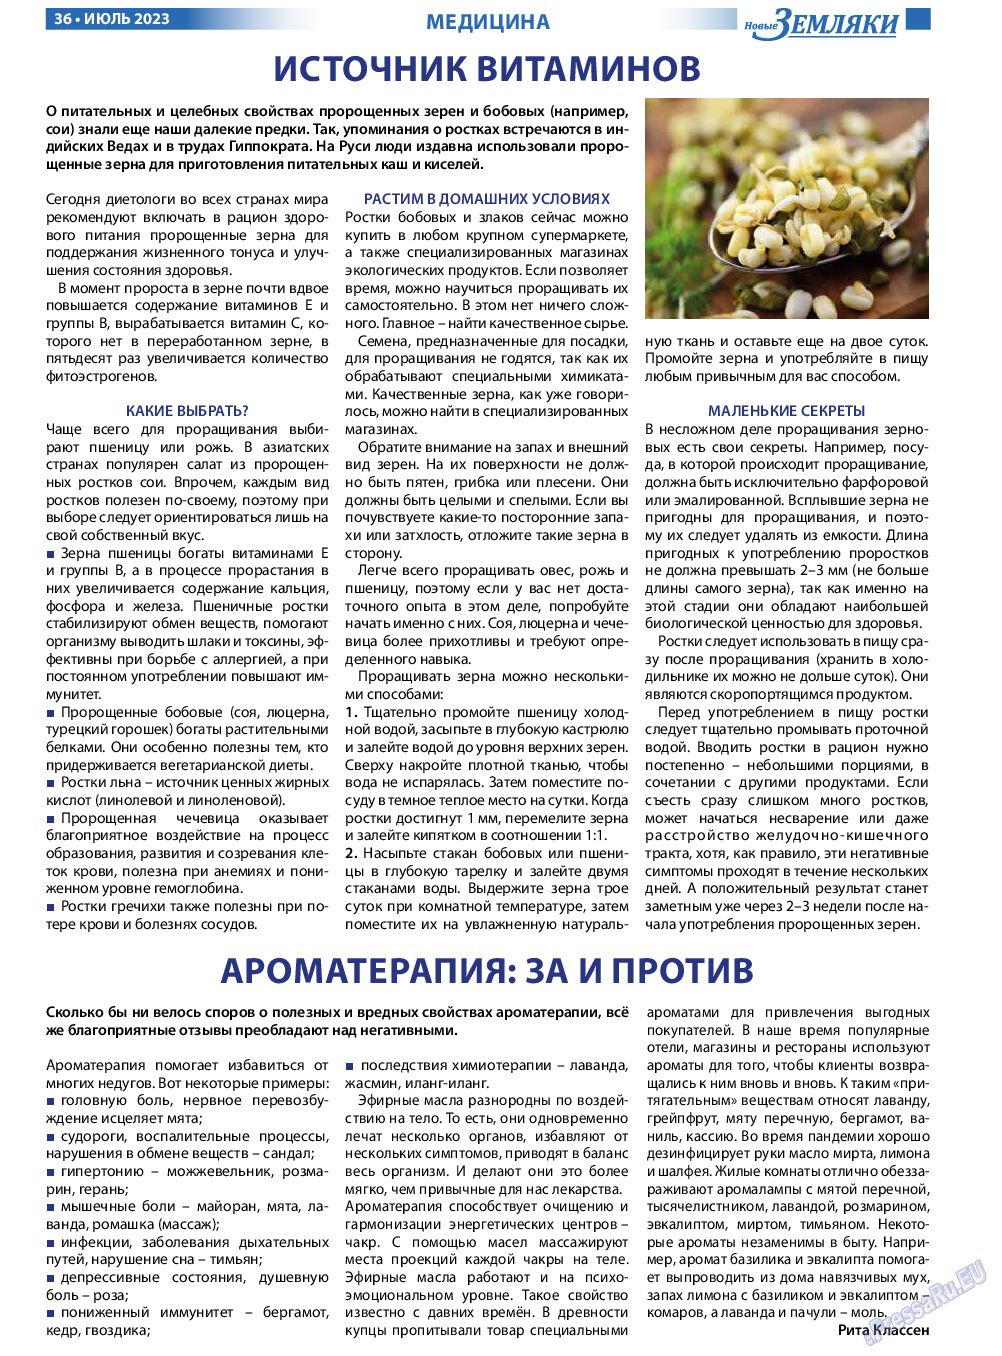 Новые Земляки (газета). 2023 год, номер 7, стр. 36